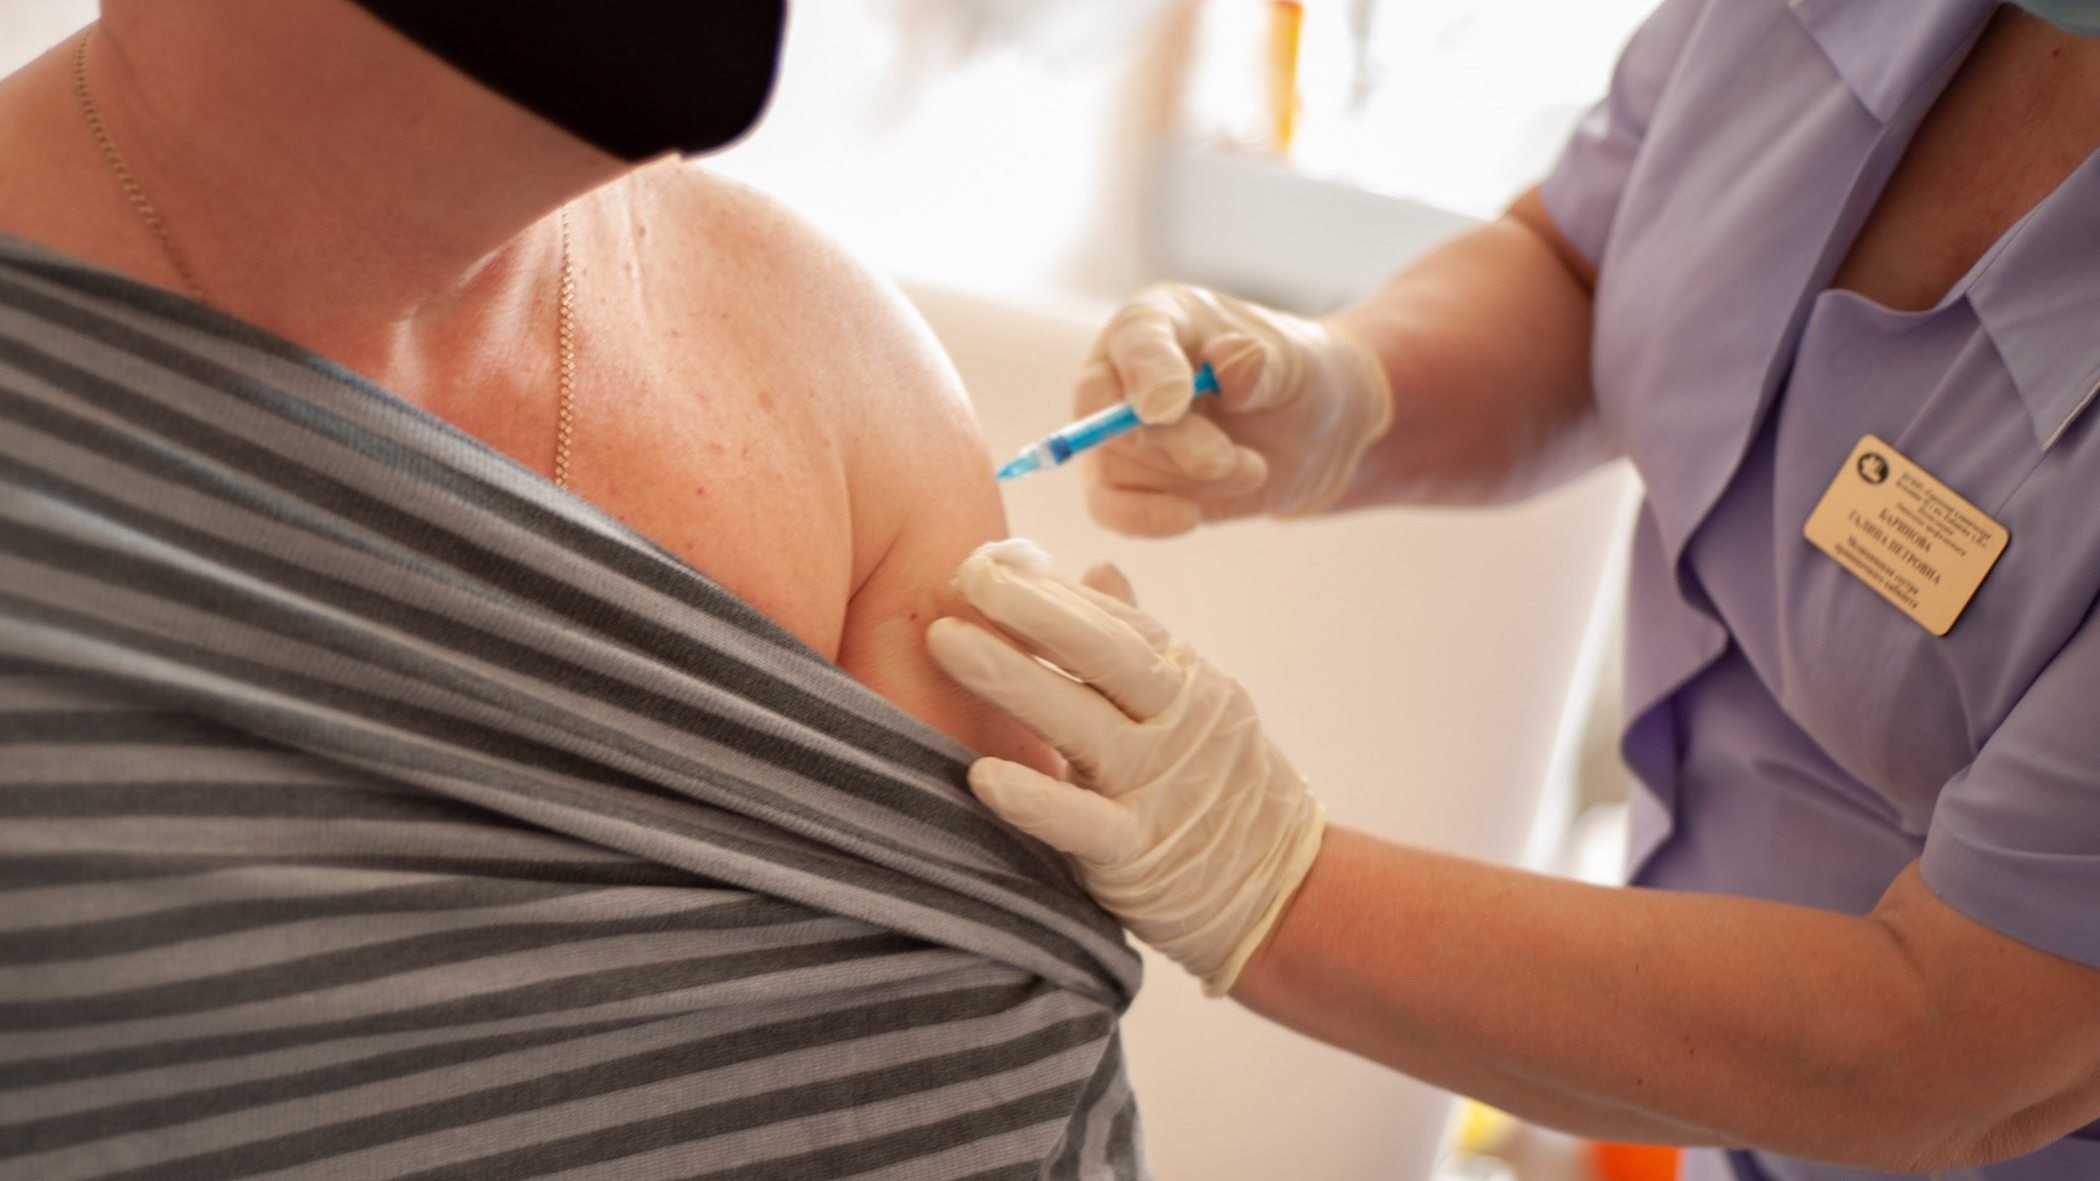 Минздрав Приморья: теперь можно прививки от гриппа и COVID-19 ставить одновременно